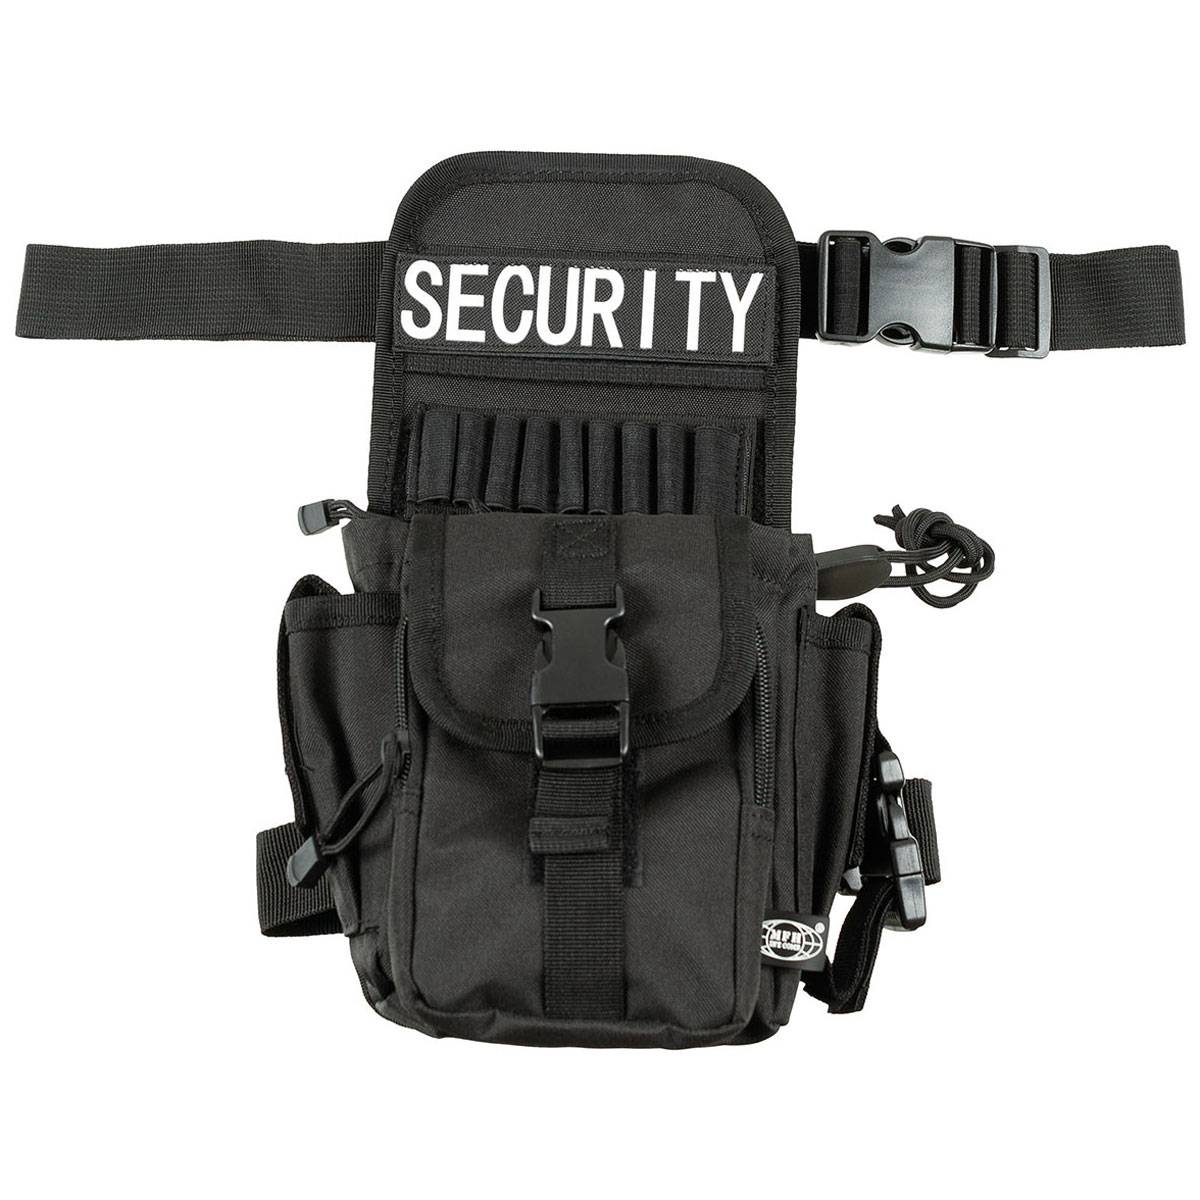 NEU POLIZEI Gürteltasche schwarz Echt Leder Security Tasche 